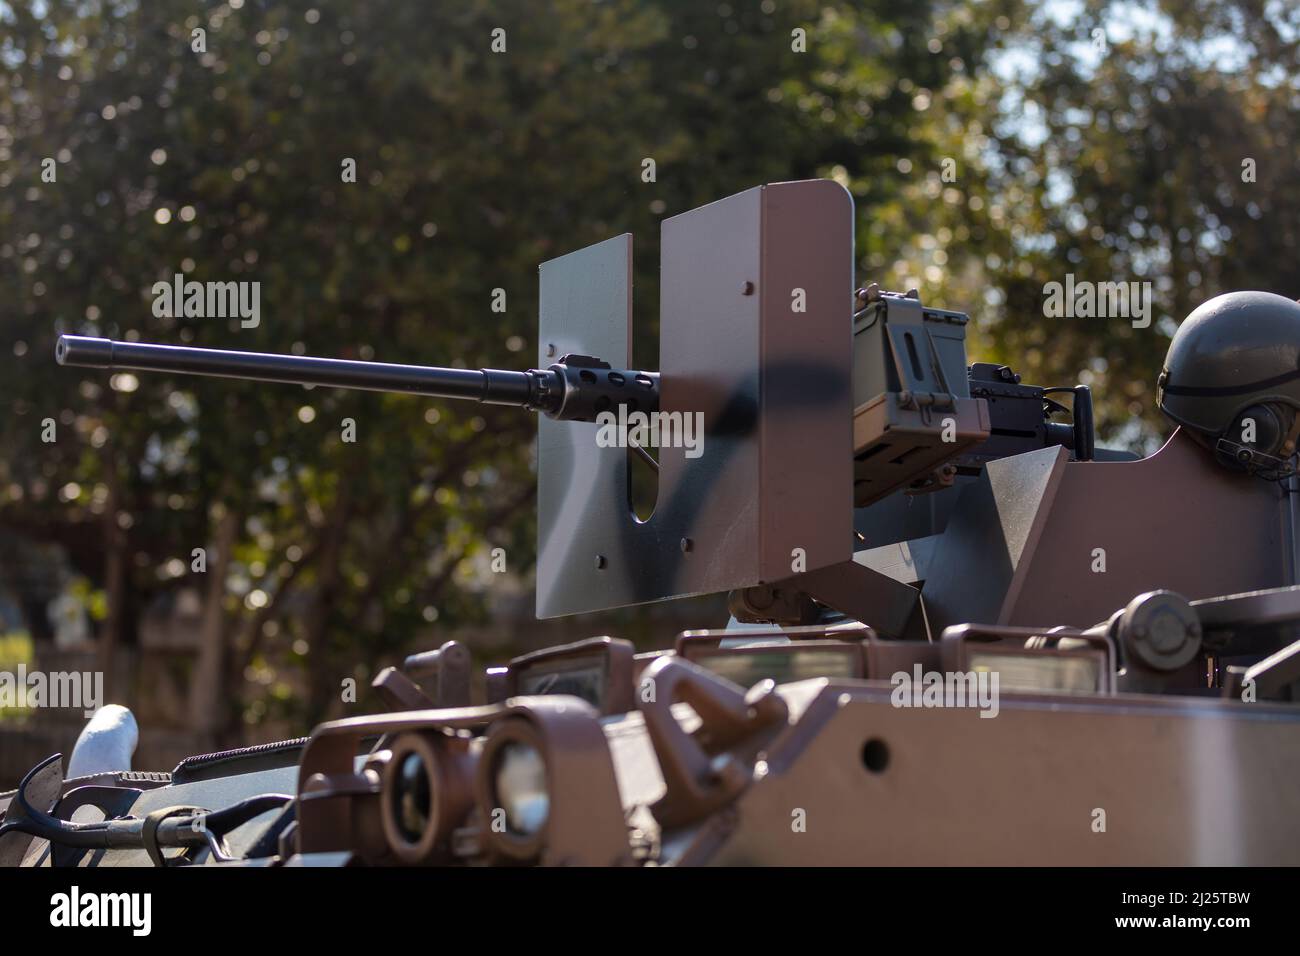 Maschinengewehr Browning m2 auf einem gepanzerten Personnel-Trägerfahrzeug, Militärparade. Krieg schwere Waffe, Bäume Hintergrund. Armeeausrüstung für Kampf und Def Stockfoto